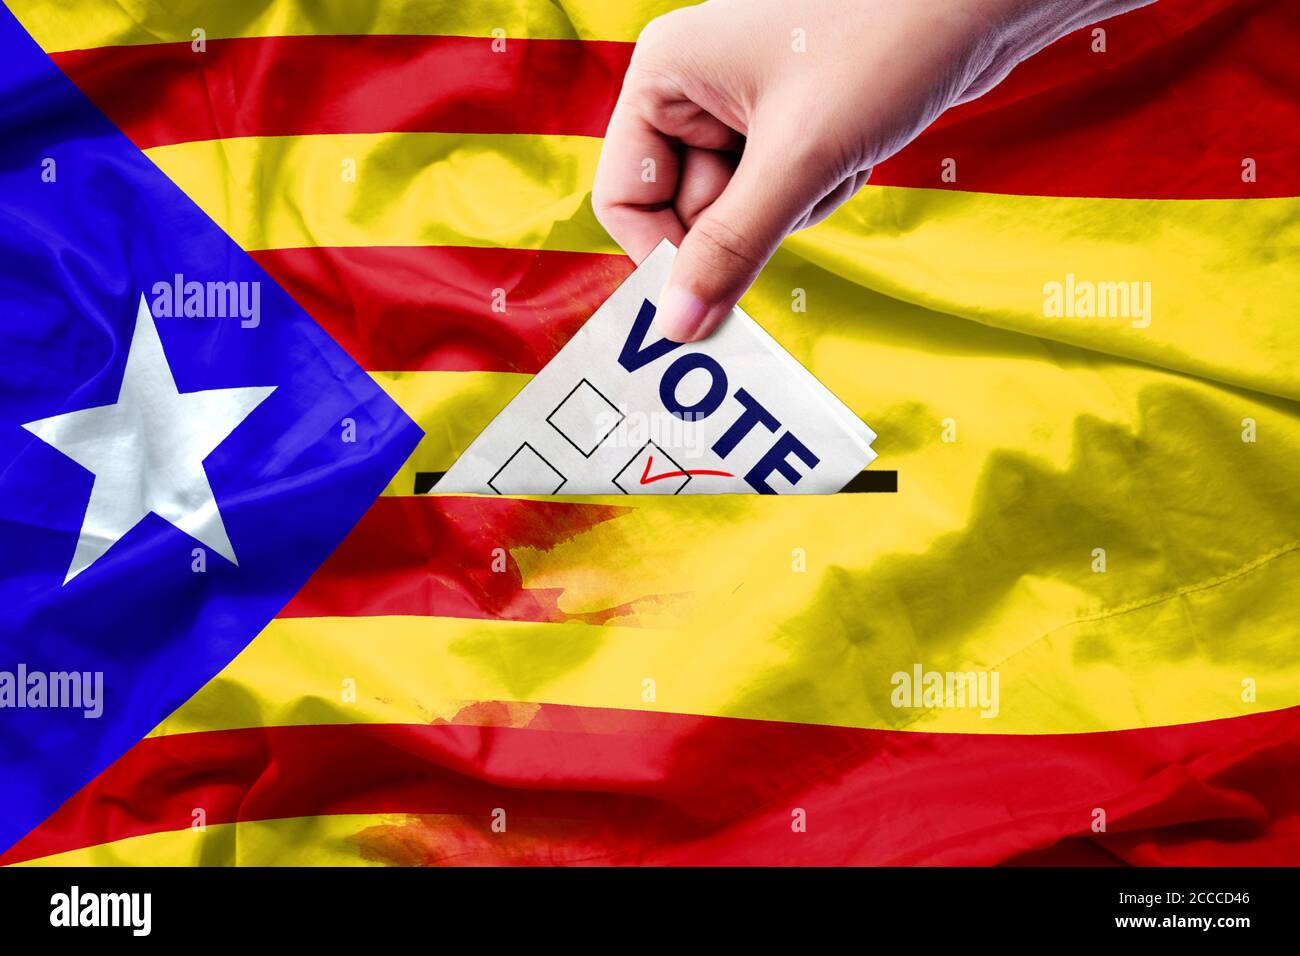 Referendum di voto per l'indipendenza della Catalogna uscire dalla crisi nazionale rischio di separatismo : primo piano di una persona che ha lanciato un voto alle elezioni durante il voto Foto Stock